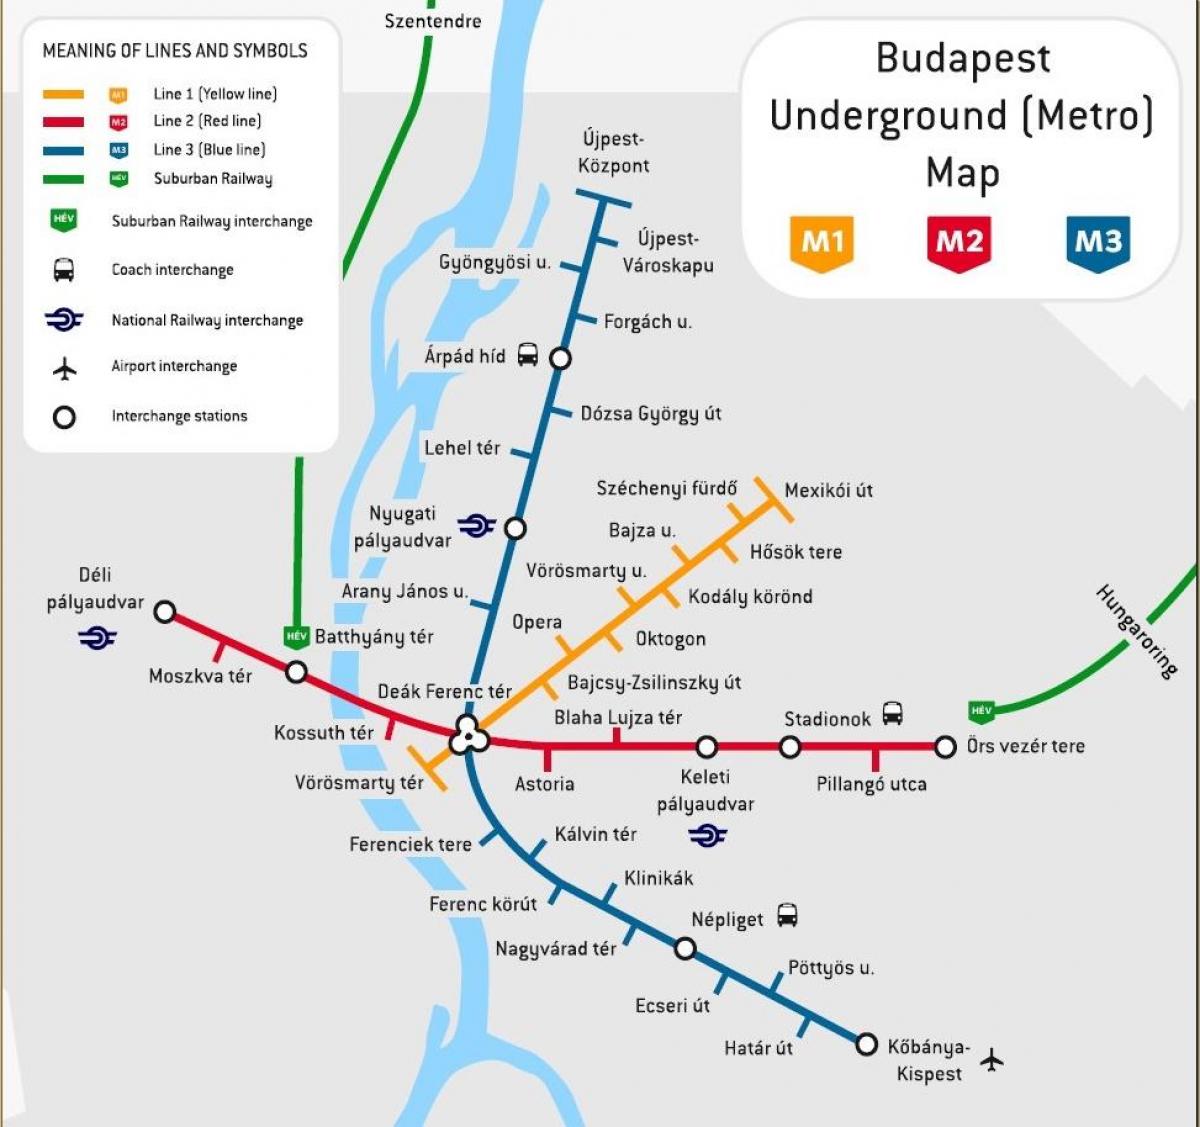 میٹرو کا نقشہ بوڈاپیسٹ ، ہنگری